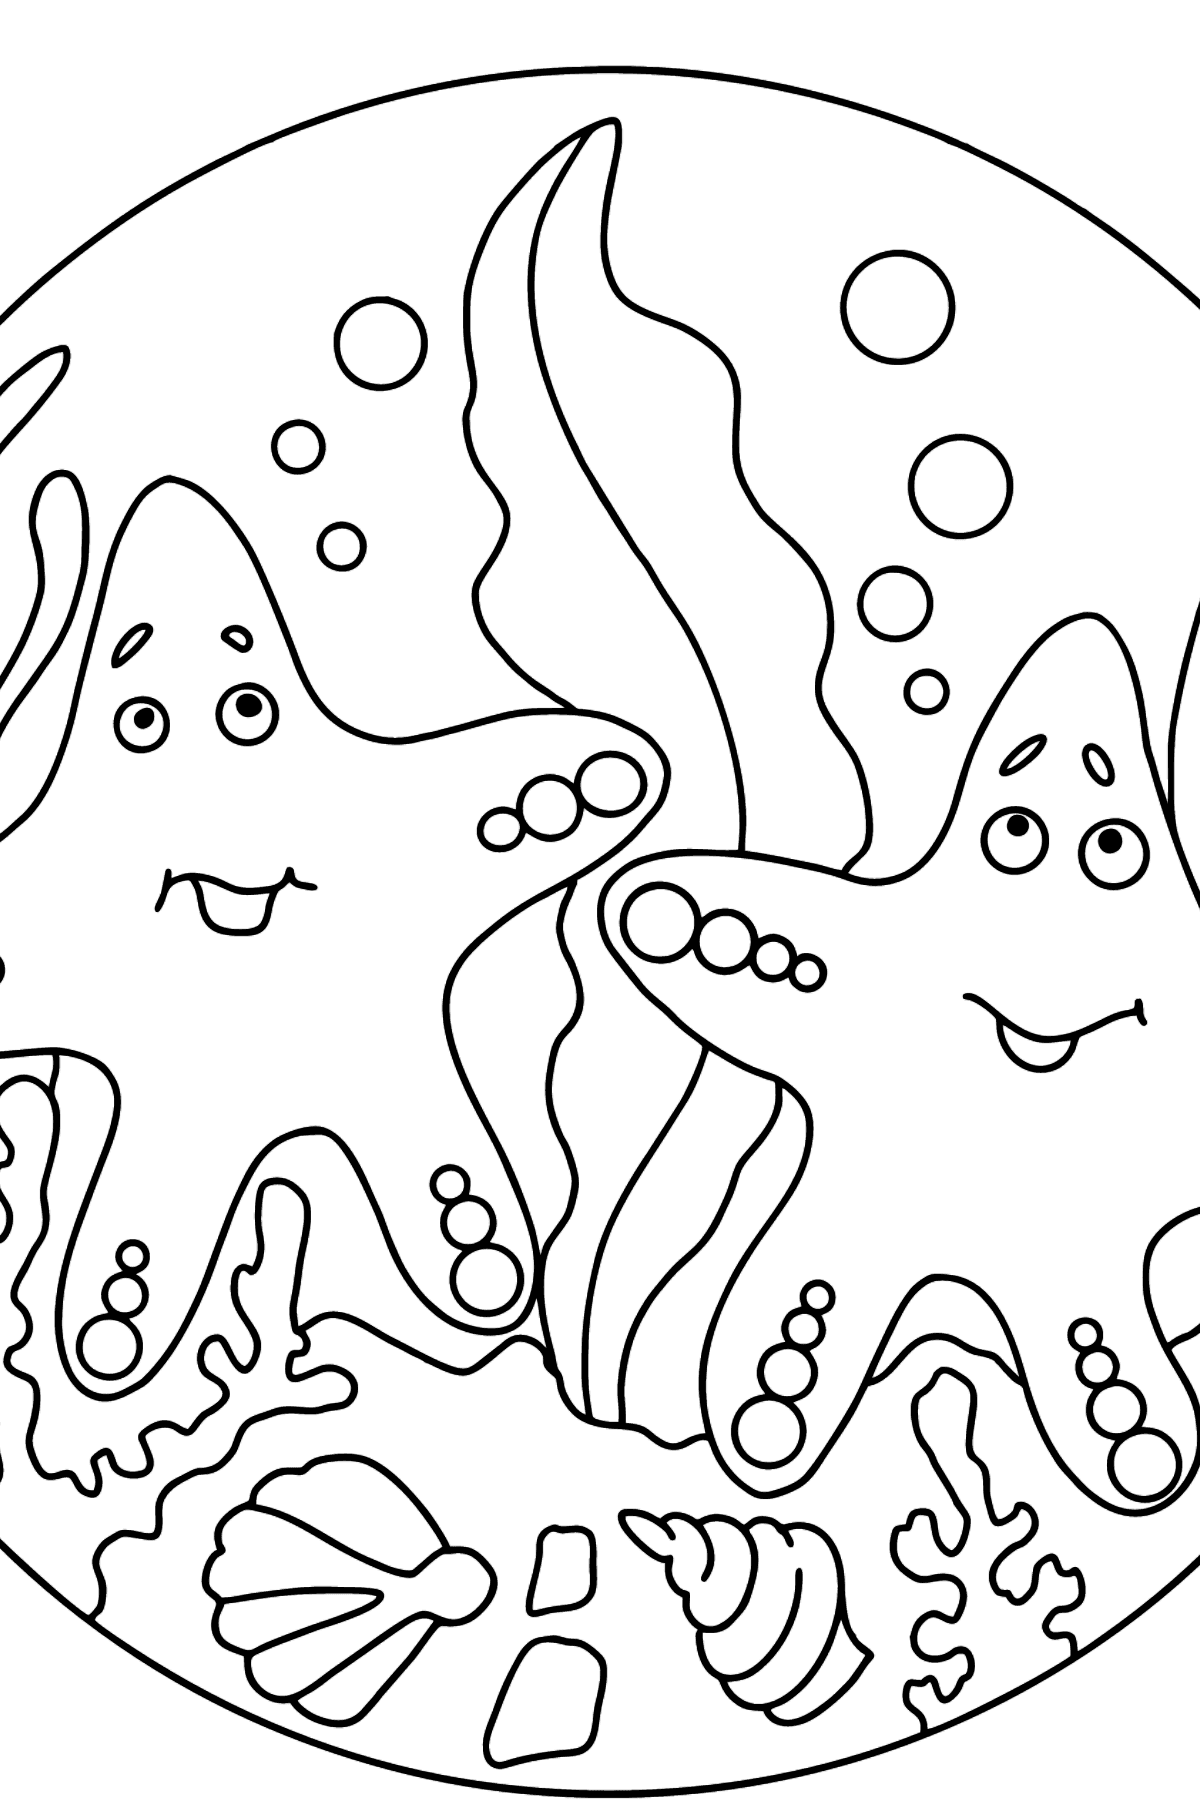 Desenho para colorir Duas estrelas do mar (difícil) - Imagens para Colorir para Crianças